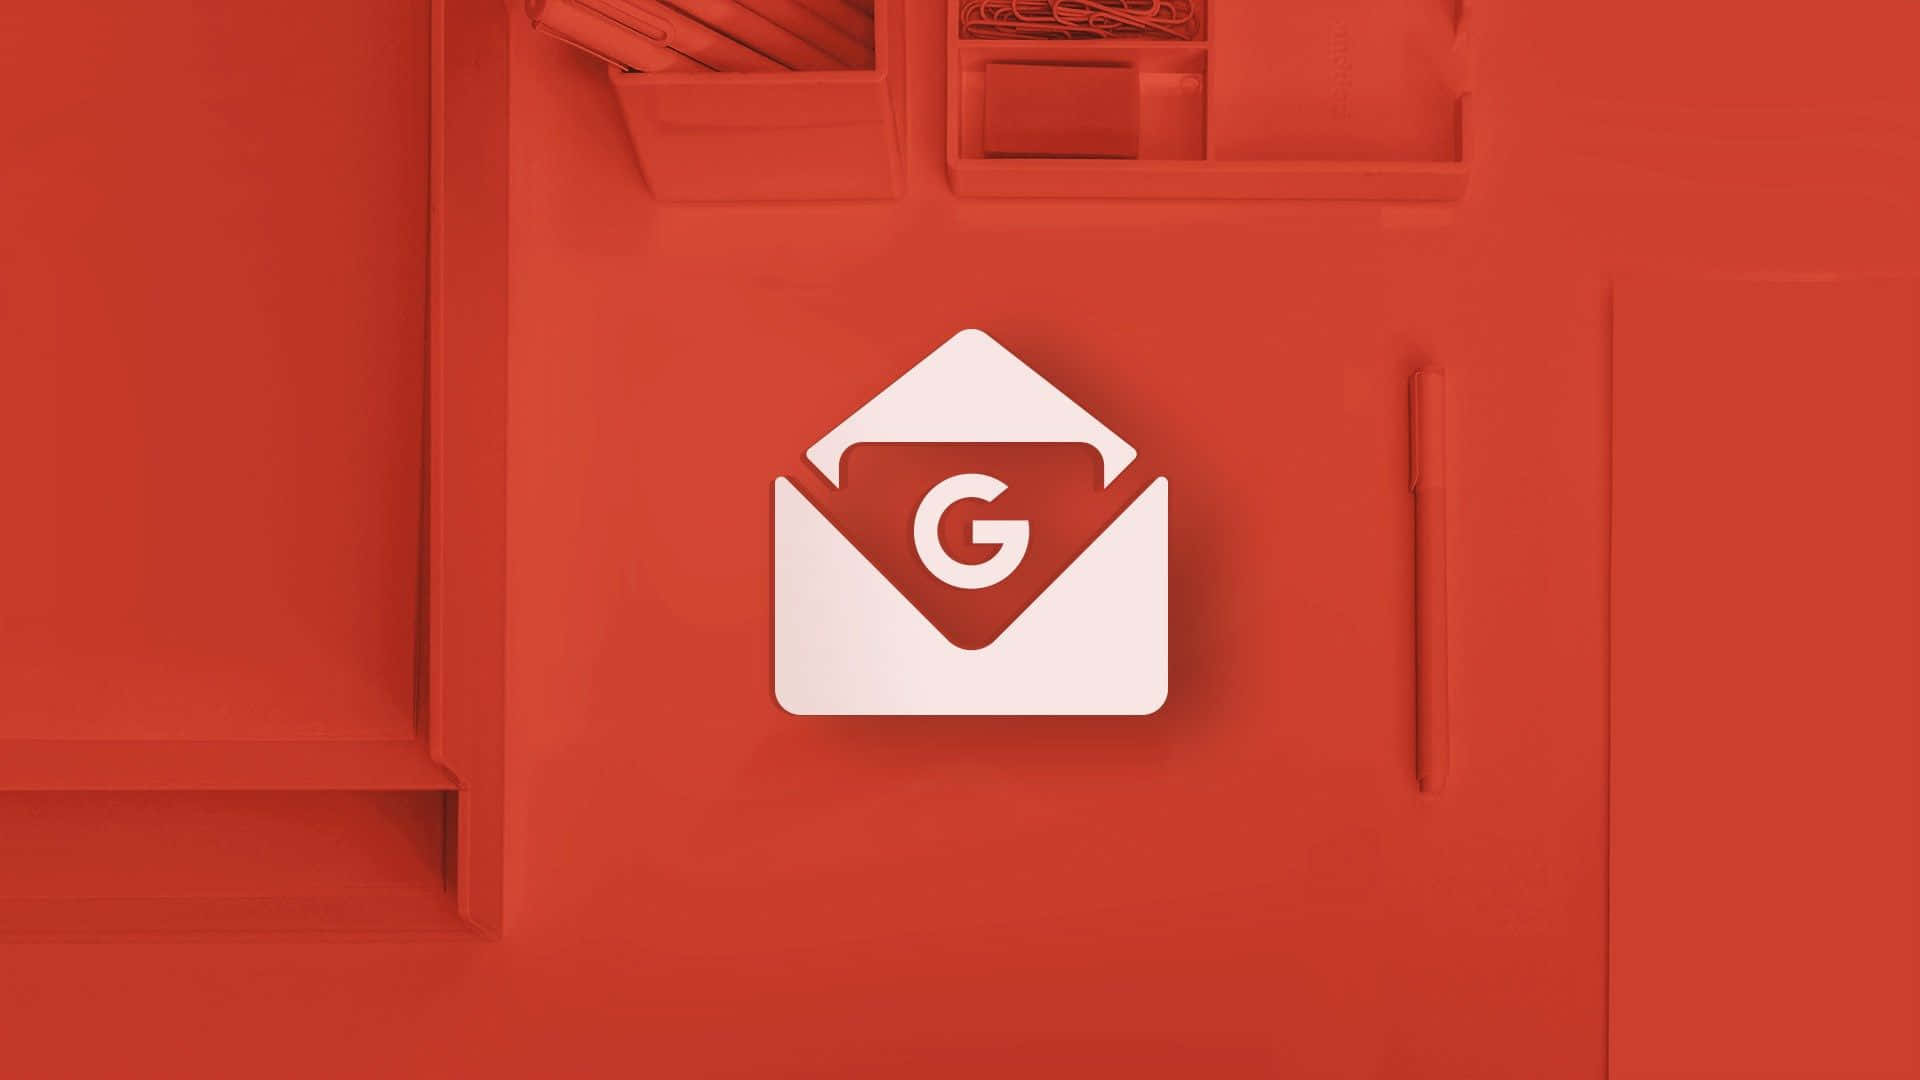 Googlemail-logo Auf Rotem Hintergrund